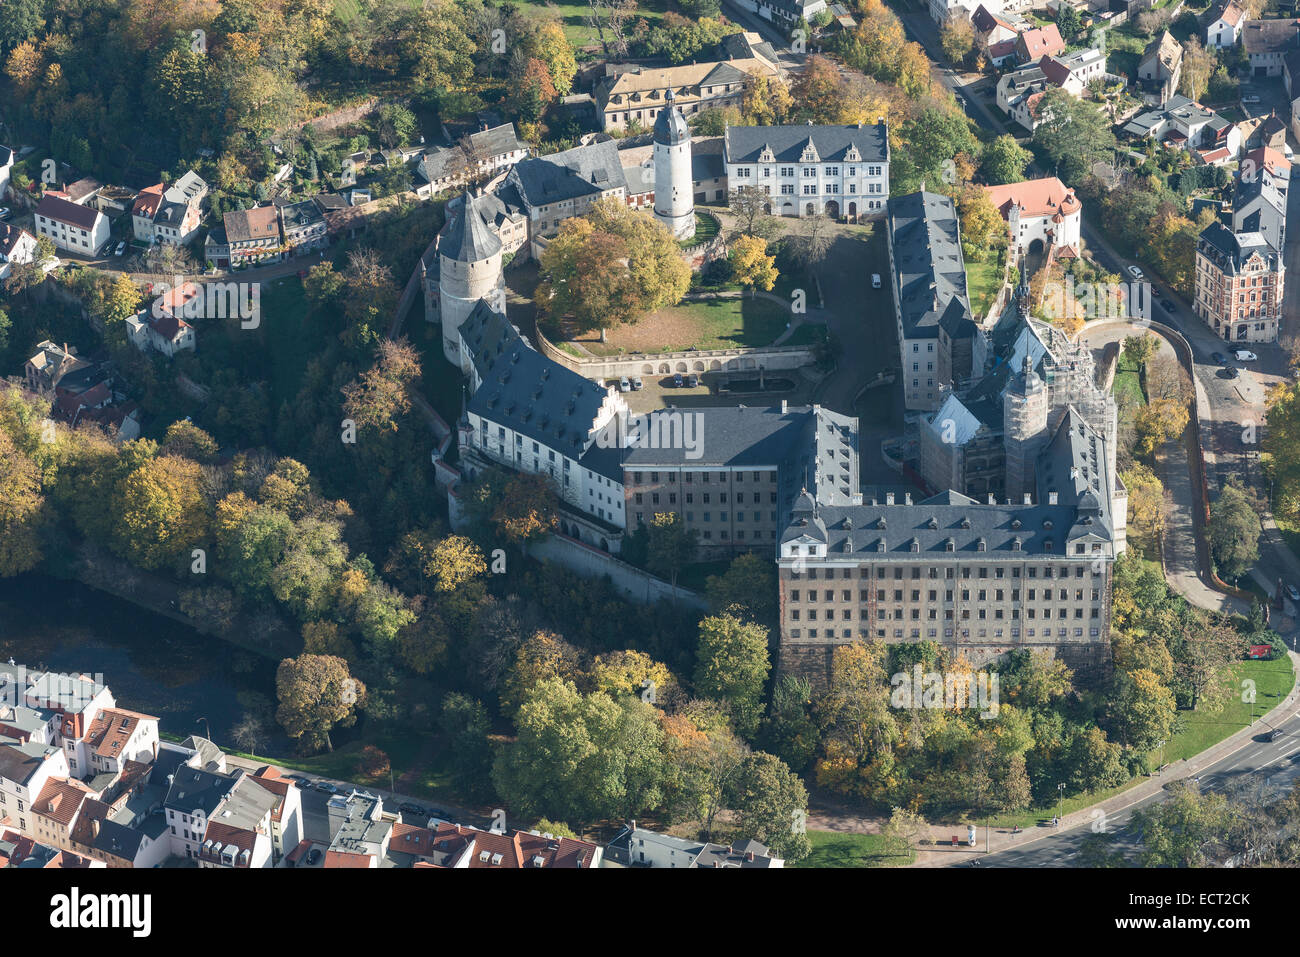 Vue aérienne, château Schloss Altenburg, accueil à la carte à jouer Musée et centre culturel, au cours de travaux de rénovation en 2014 Banque D'Images